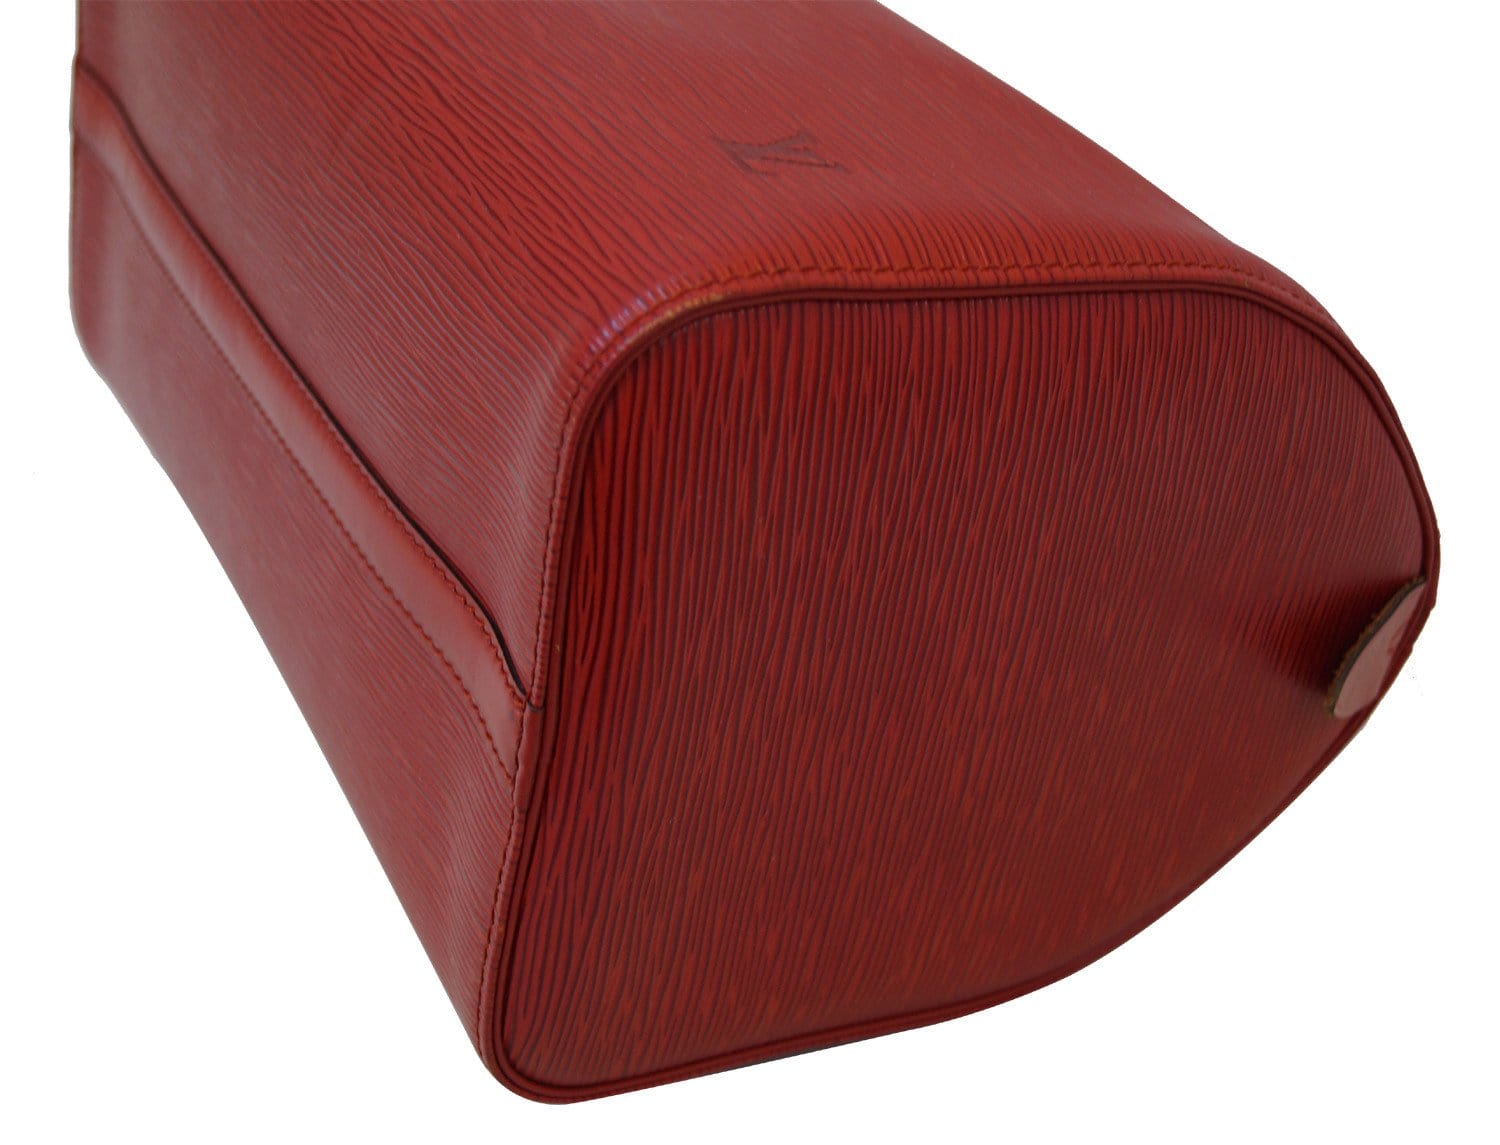 Louis Vuitton Red Epi Leather Speedy 30 Bag - Yoogi's Closet